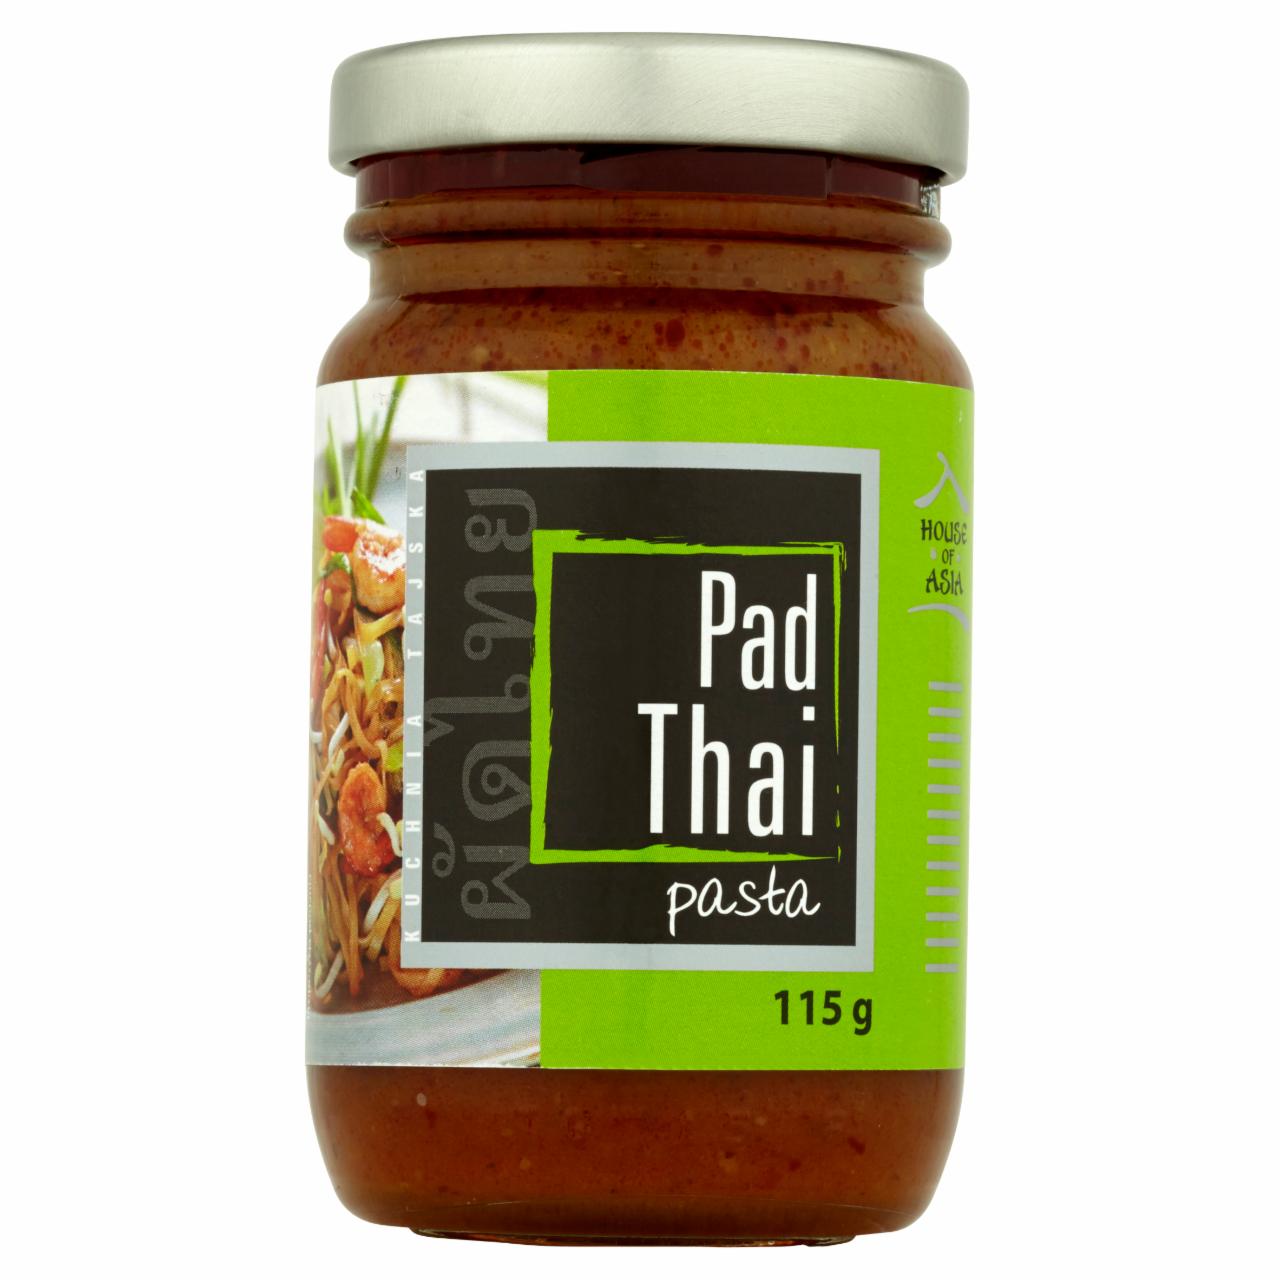 Zdjęcia - House of Asia Pad Thai Pasta 115 g